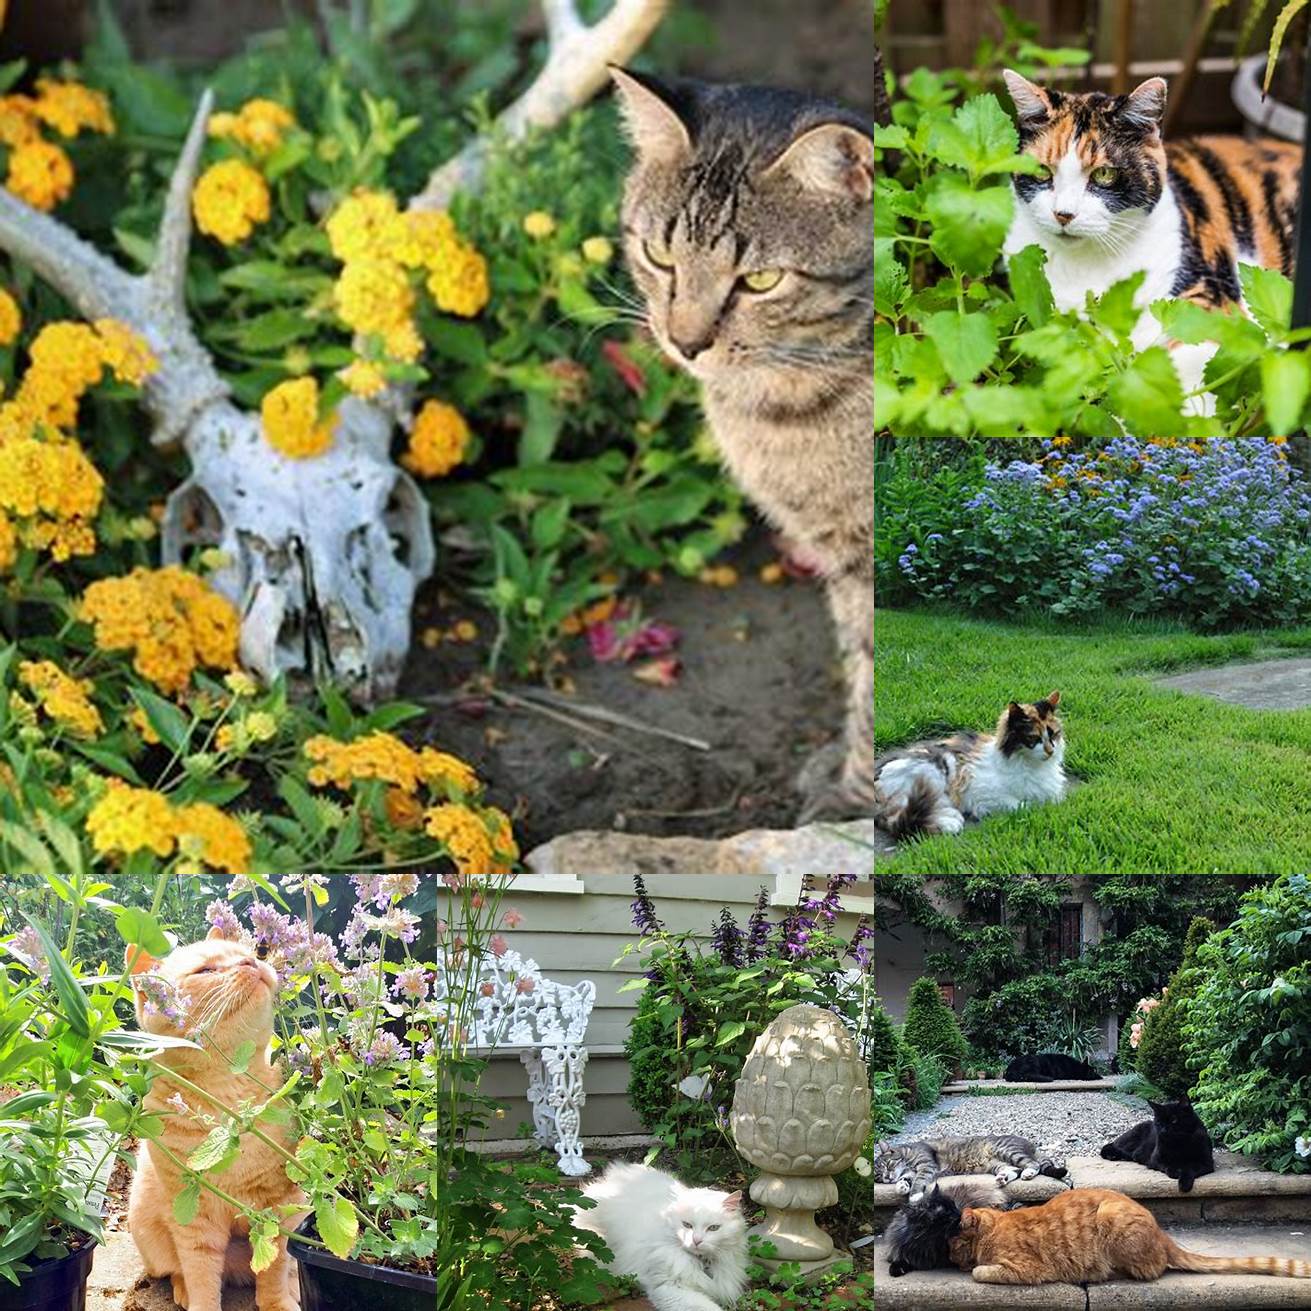 Cat Family in Garden